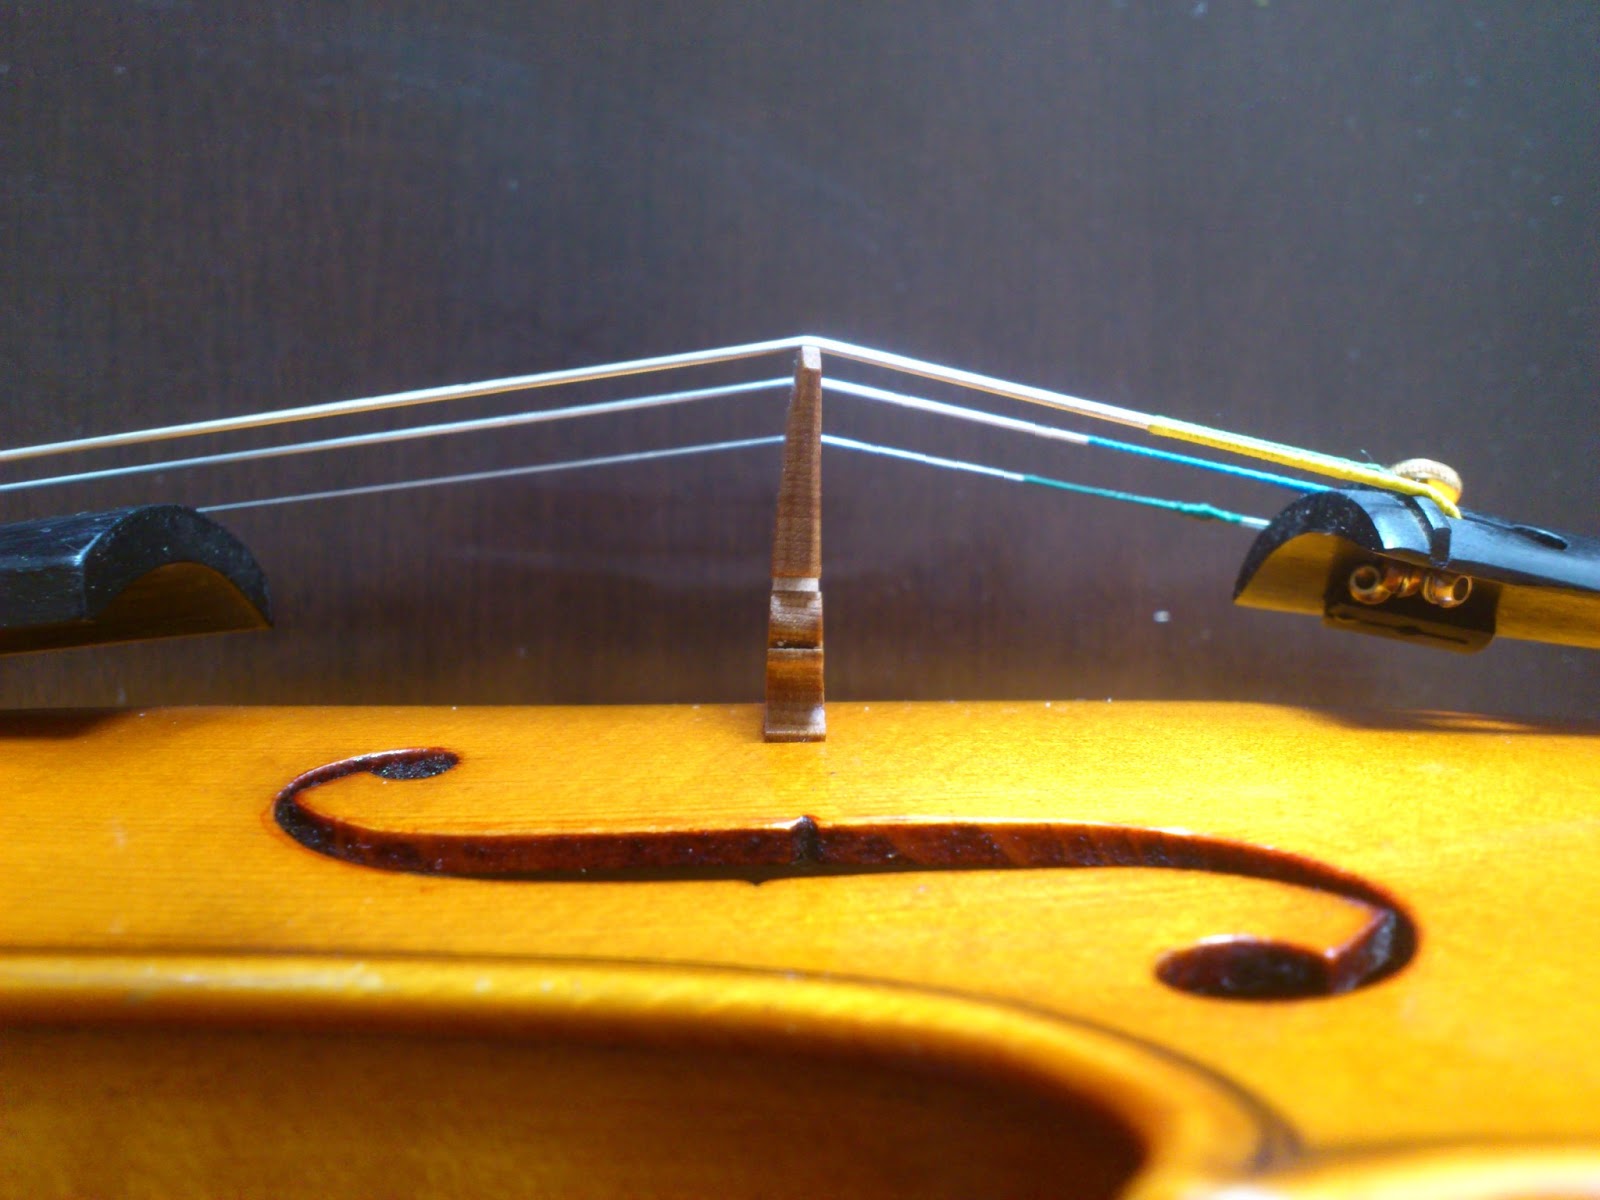 ヴァイオリン評論家になるためには - ヴァイオリンがプロ並みに - Yahoo!知恵袋